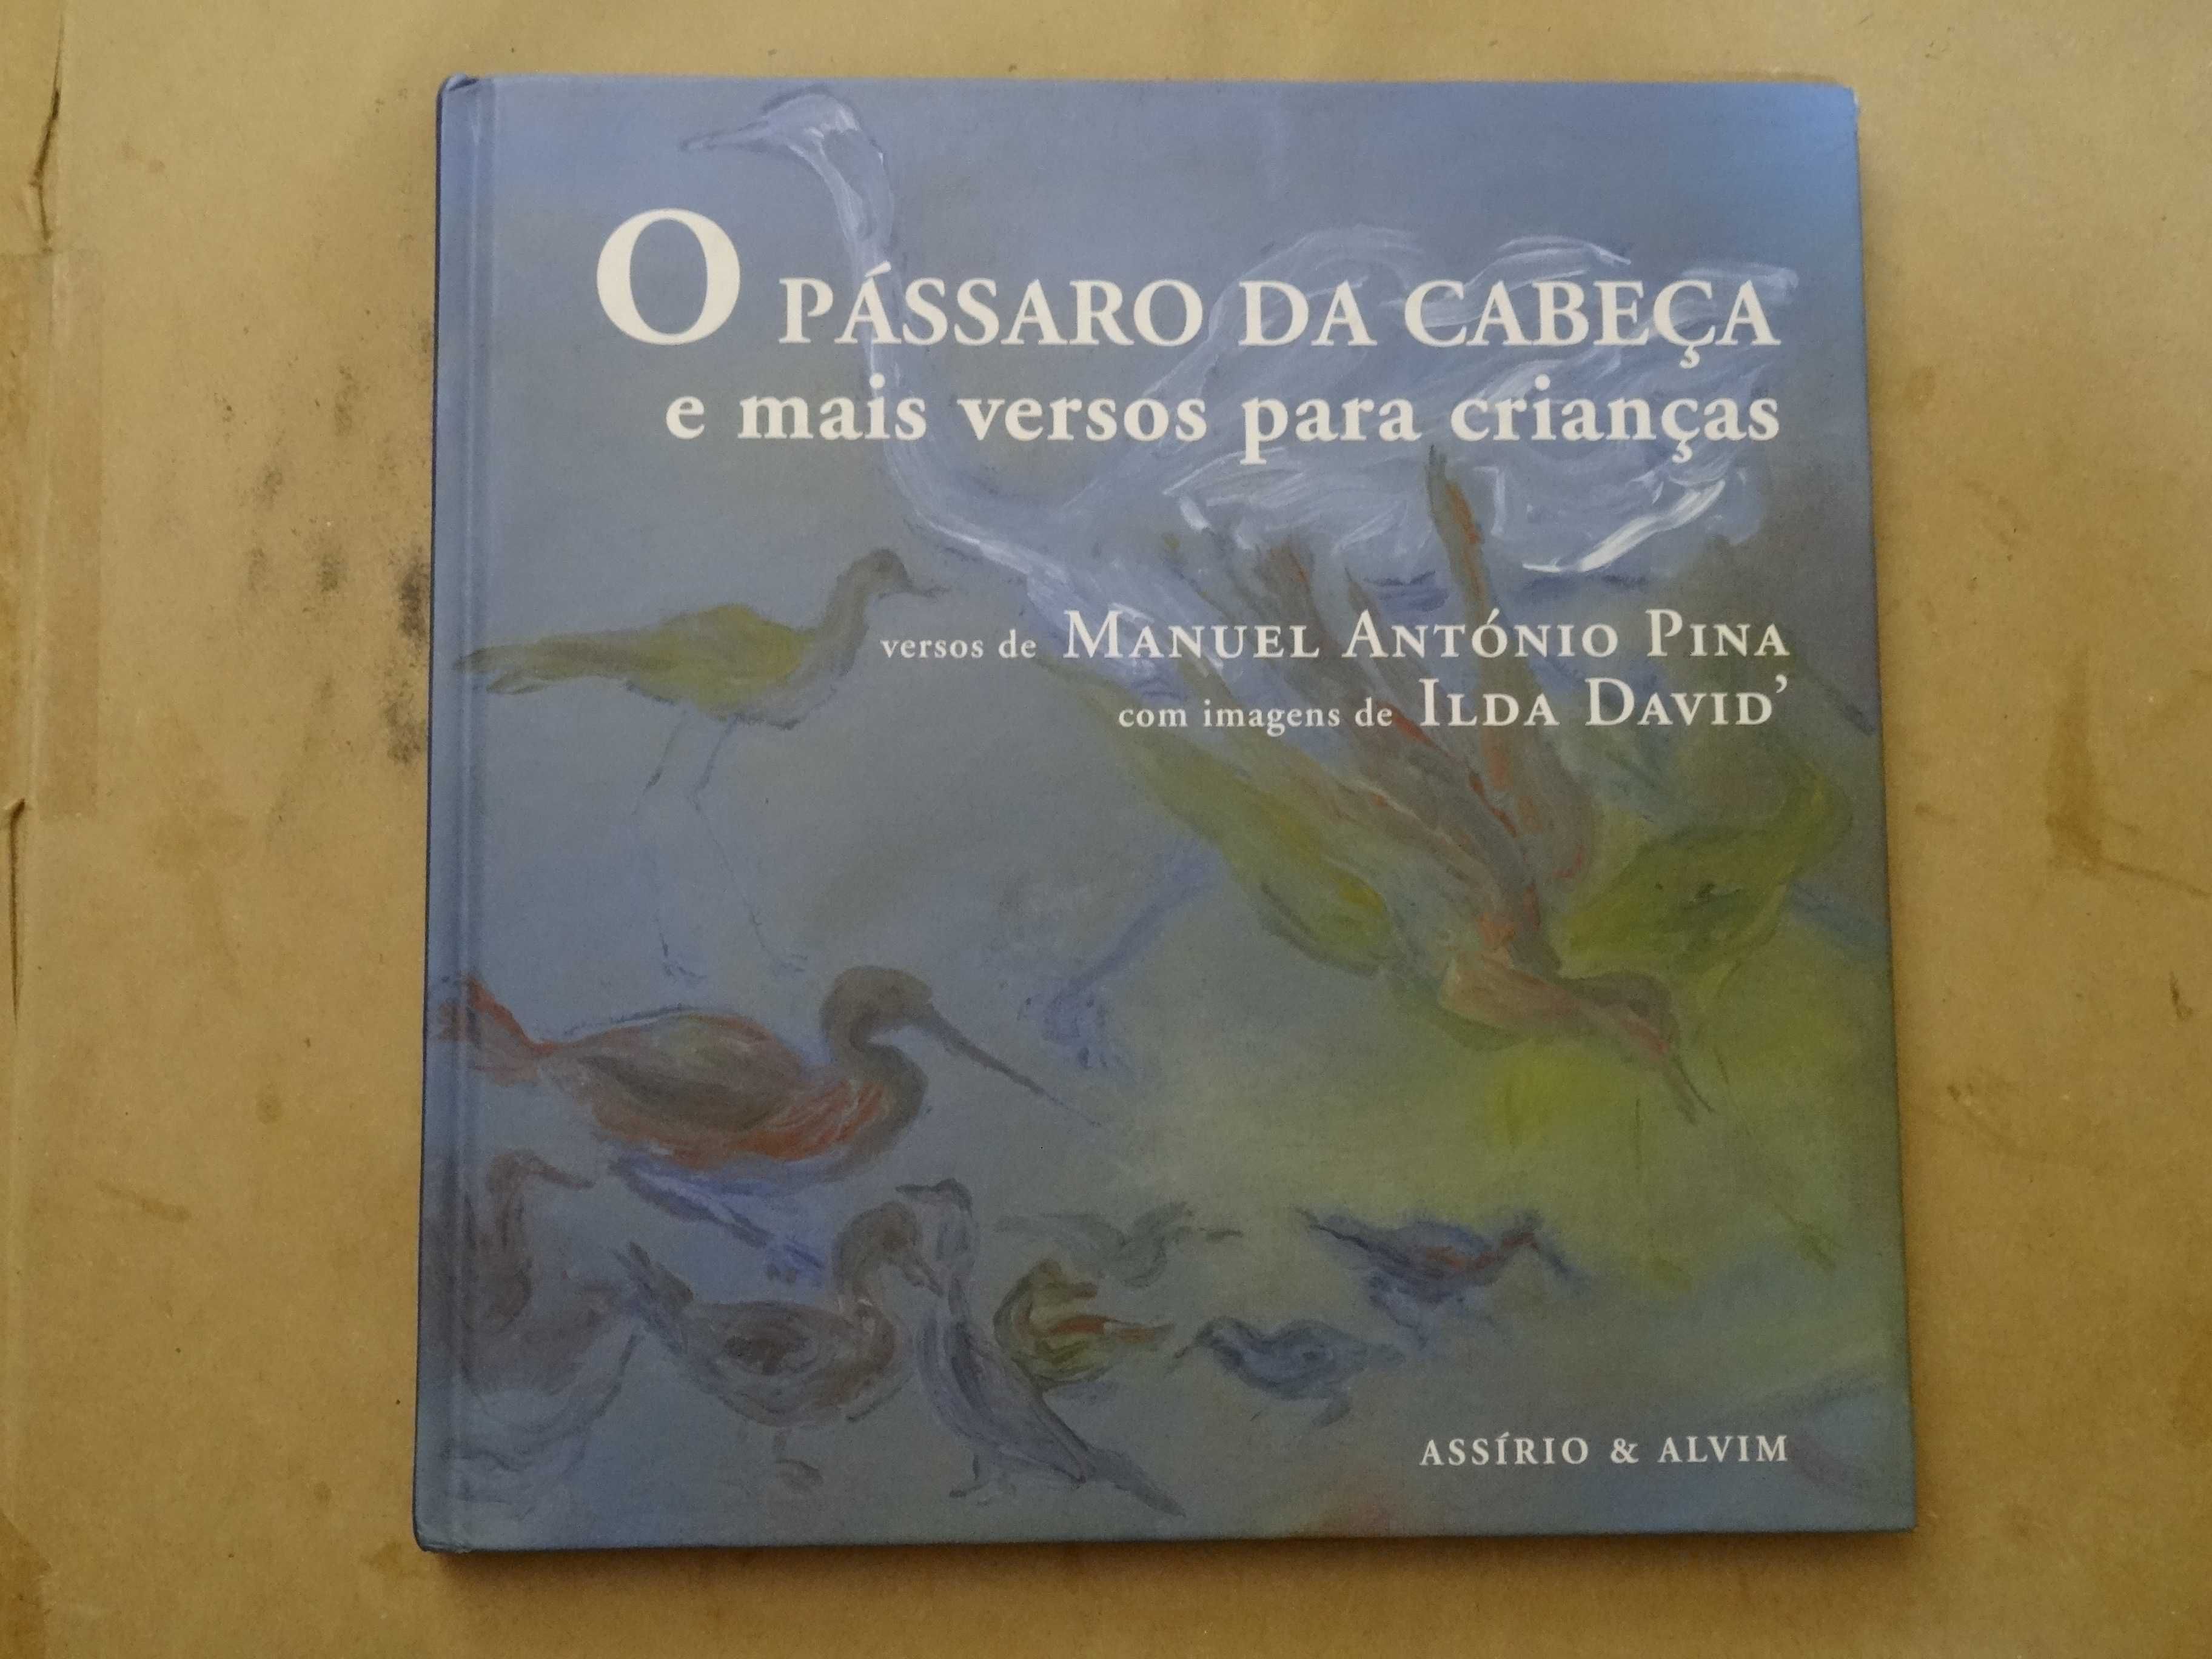 O Pássaro da Cabeça e mais versos para crianças de Manuel António Pina